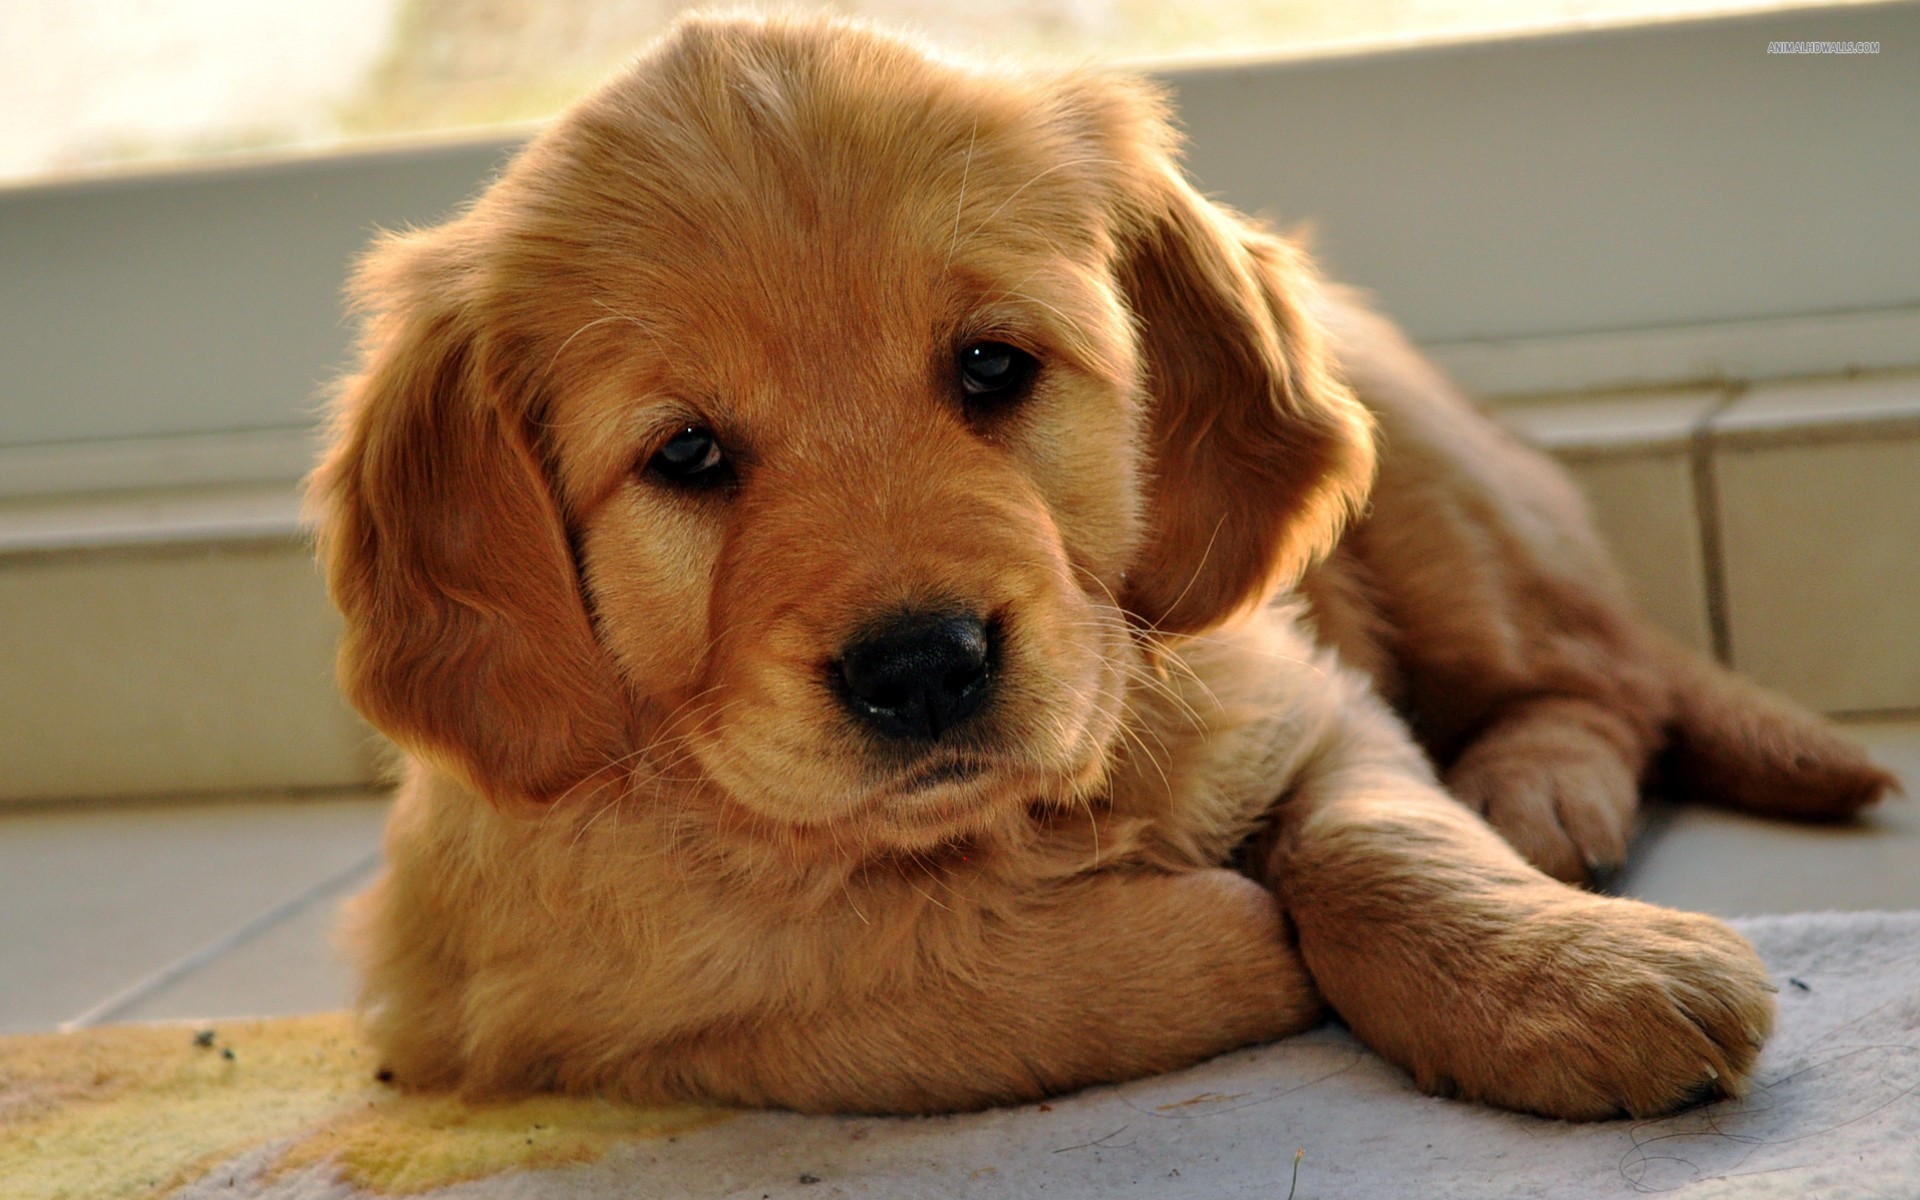 golden puppy